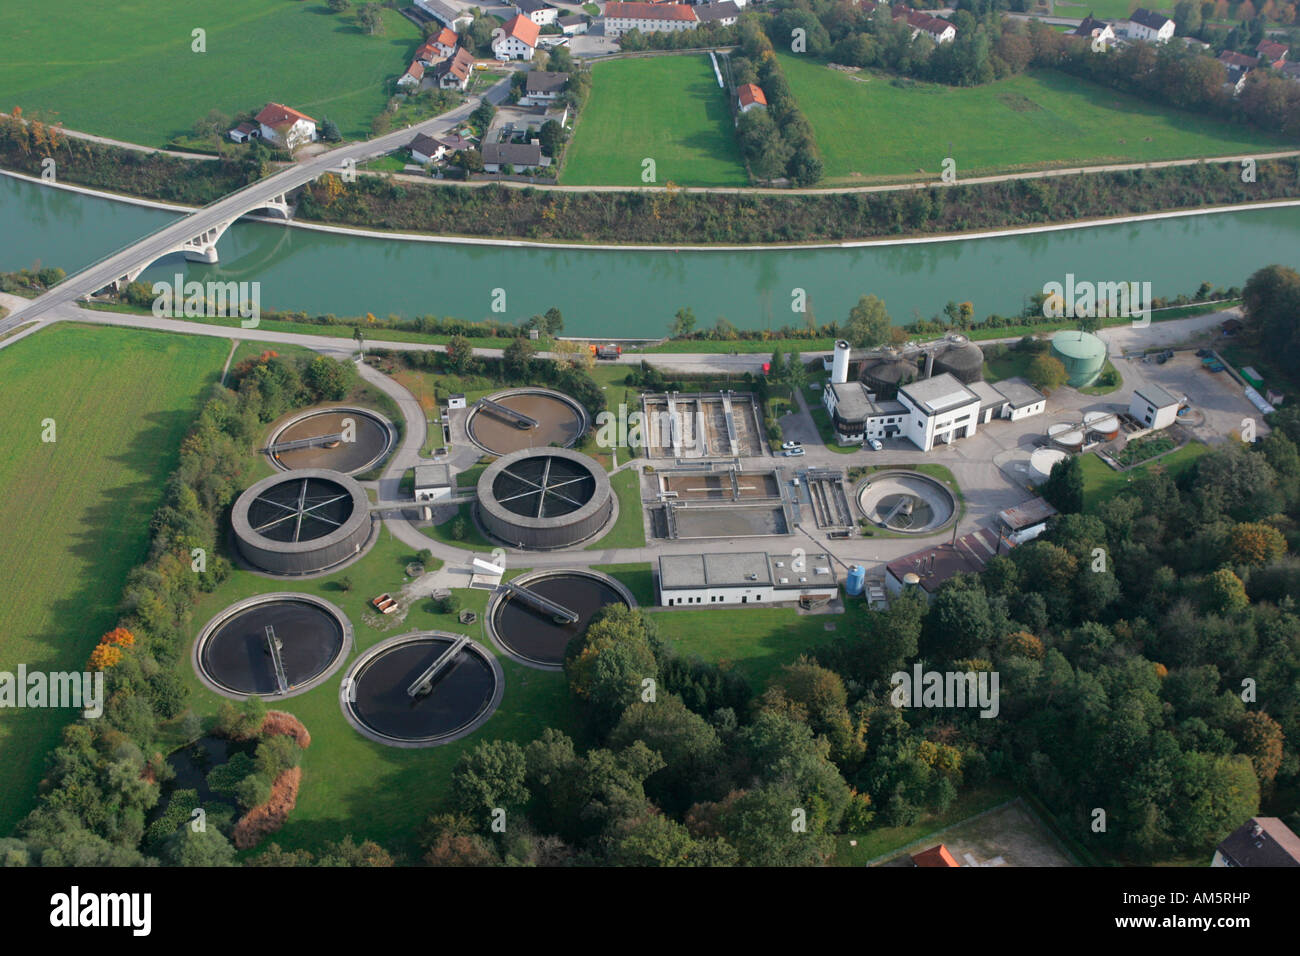 Station d'épuration, photo aérienne, Inn Canal près de Waldkraiburg, Upper Bavaria, Germany, Europe Banque D'Images